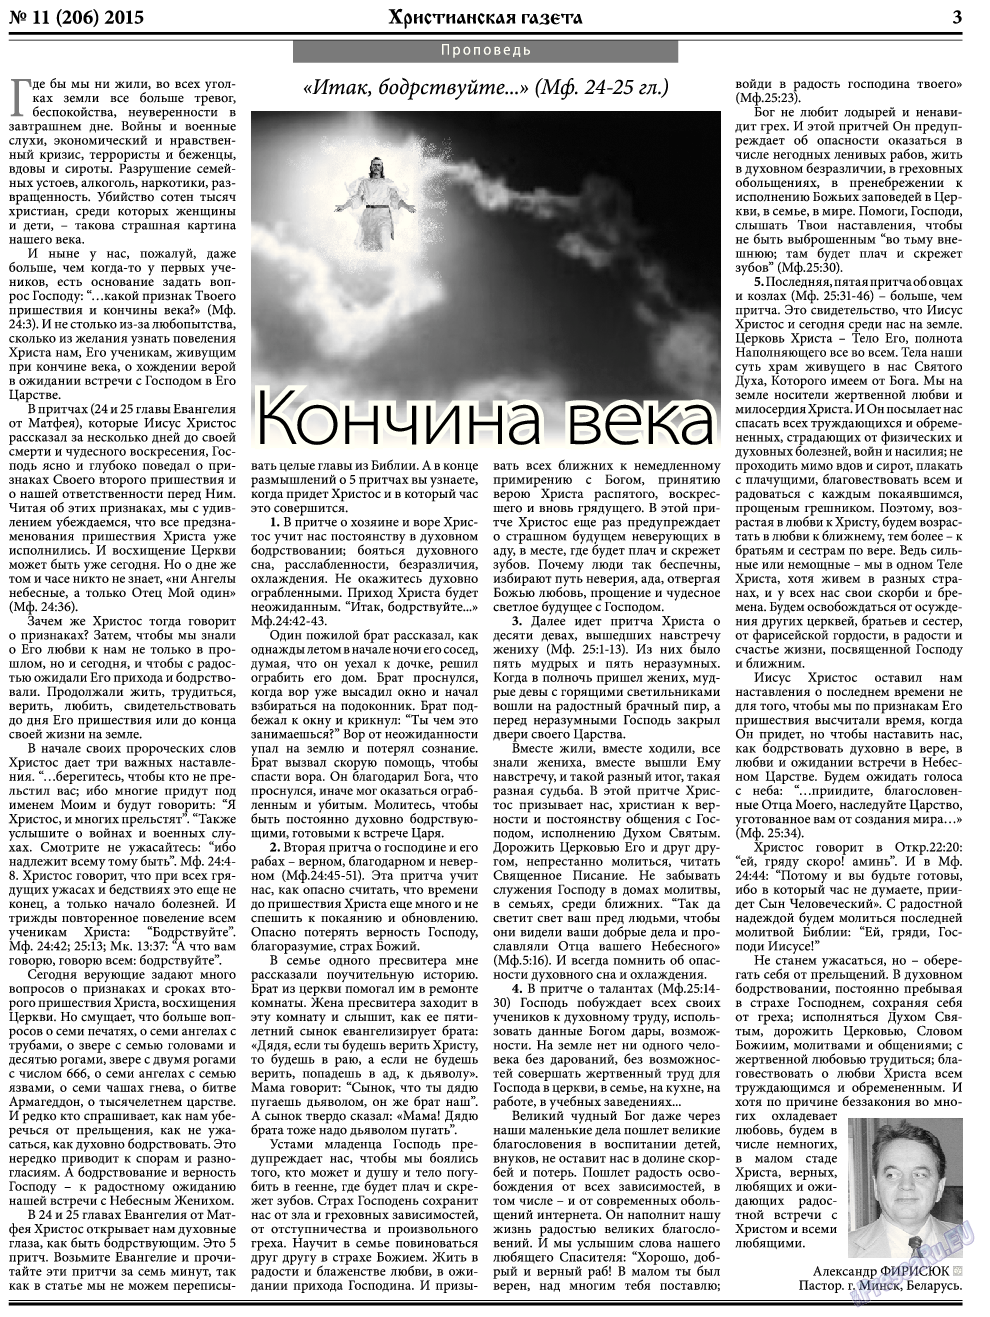 Христианская газета, газета. 2015 №11 стр.3